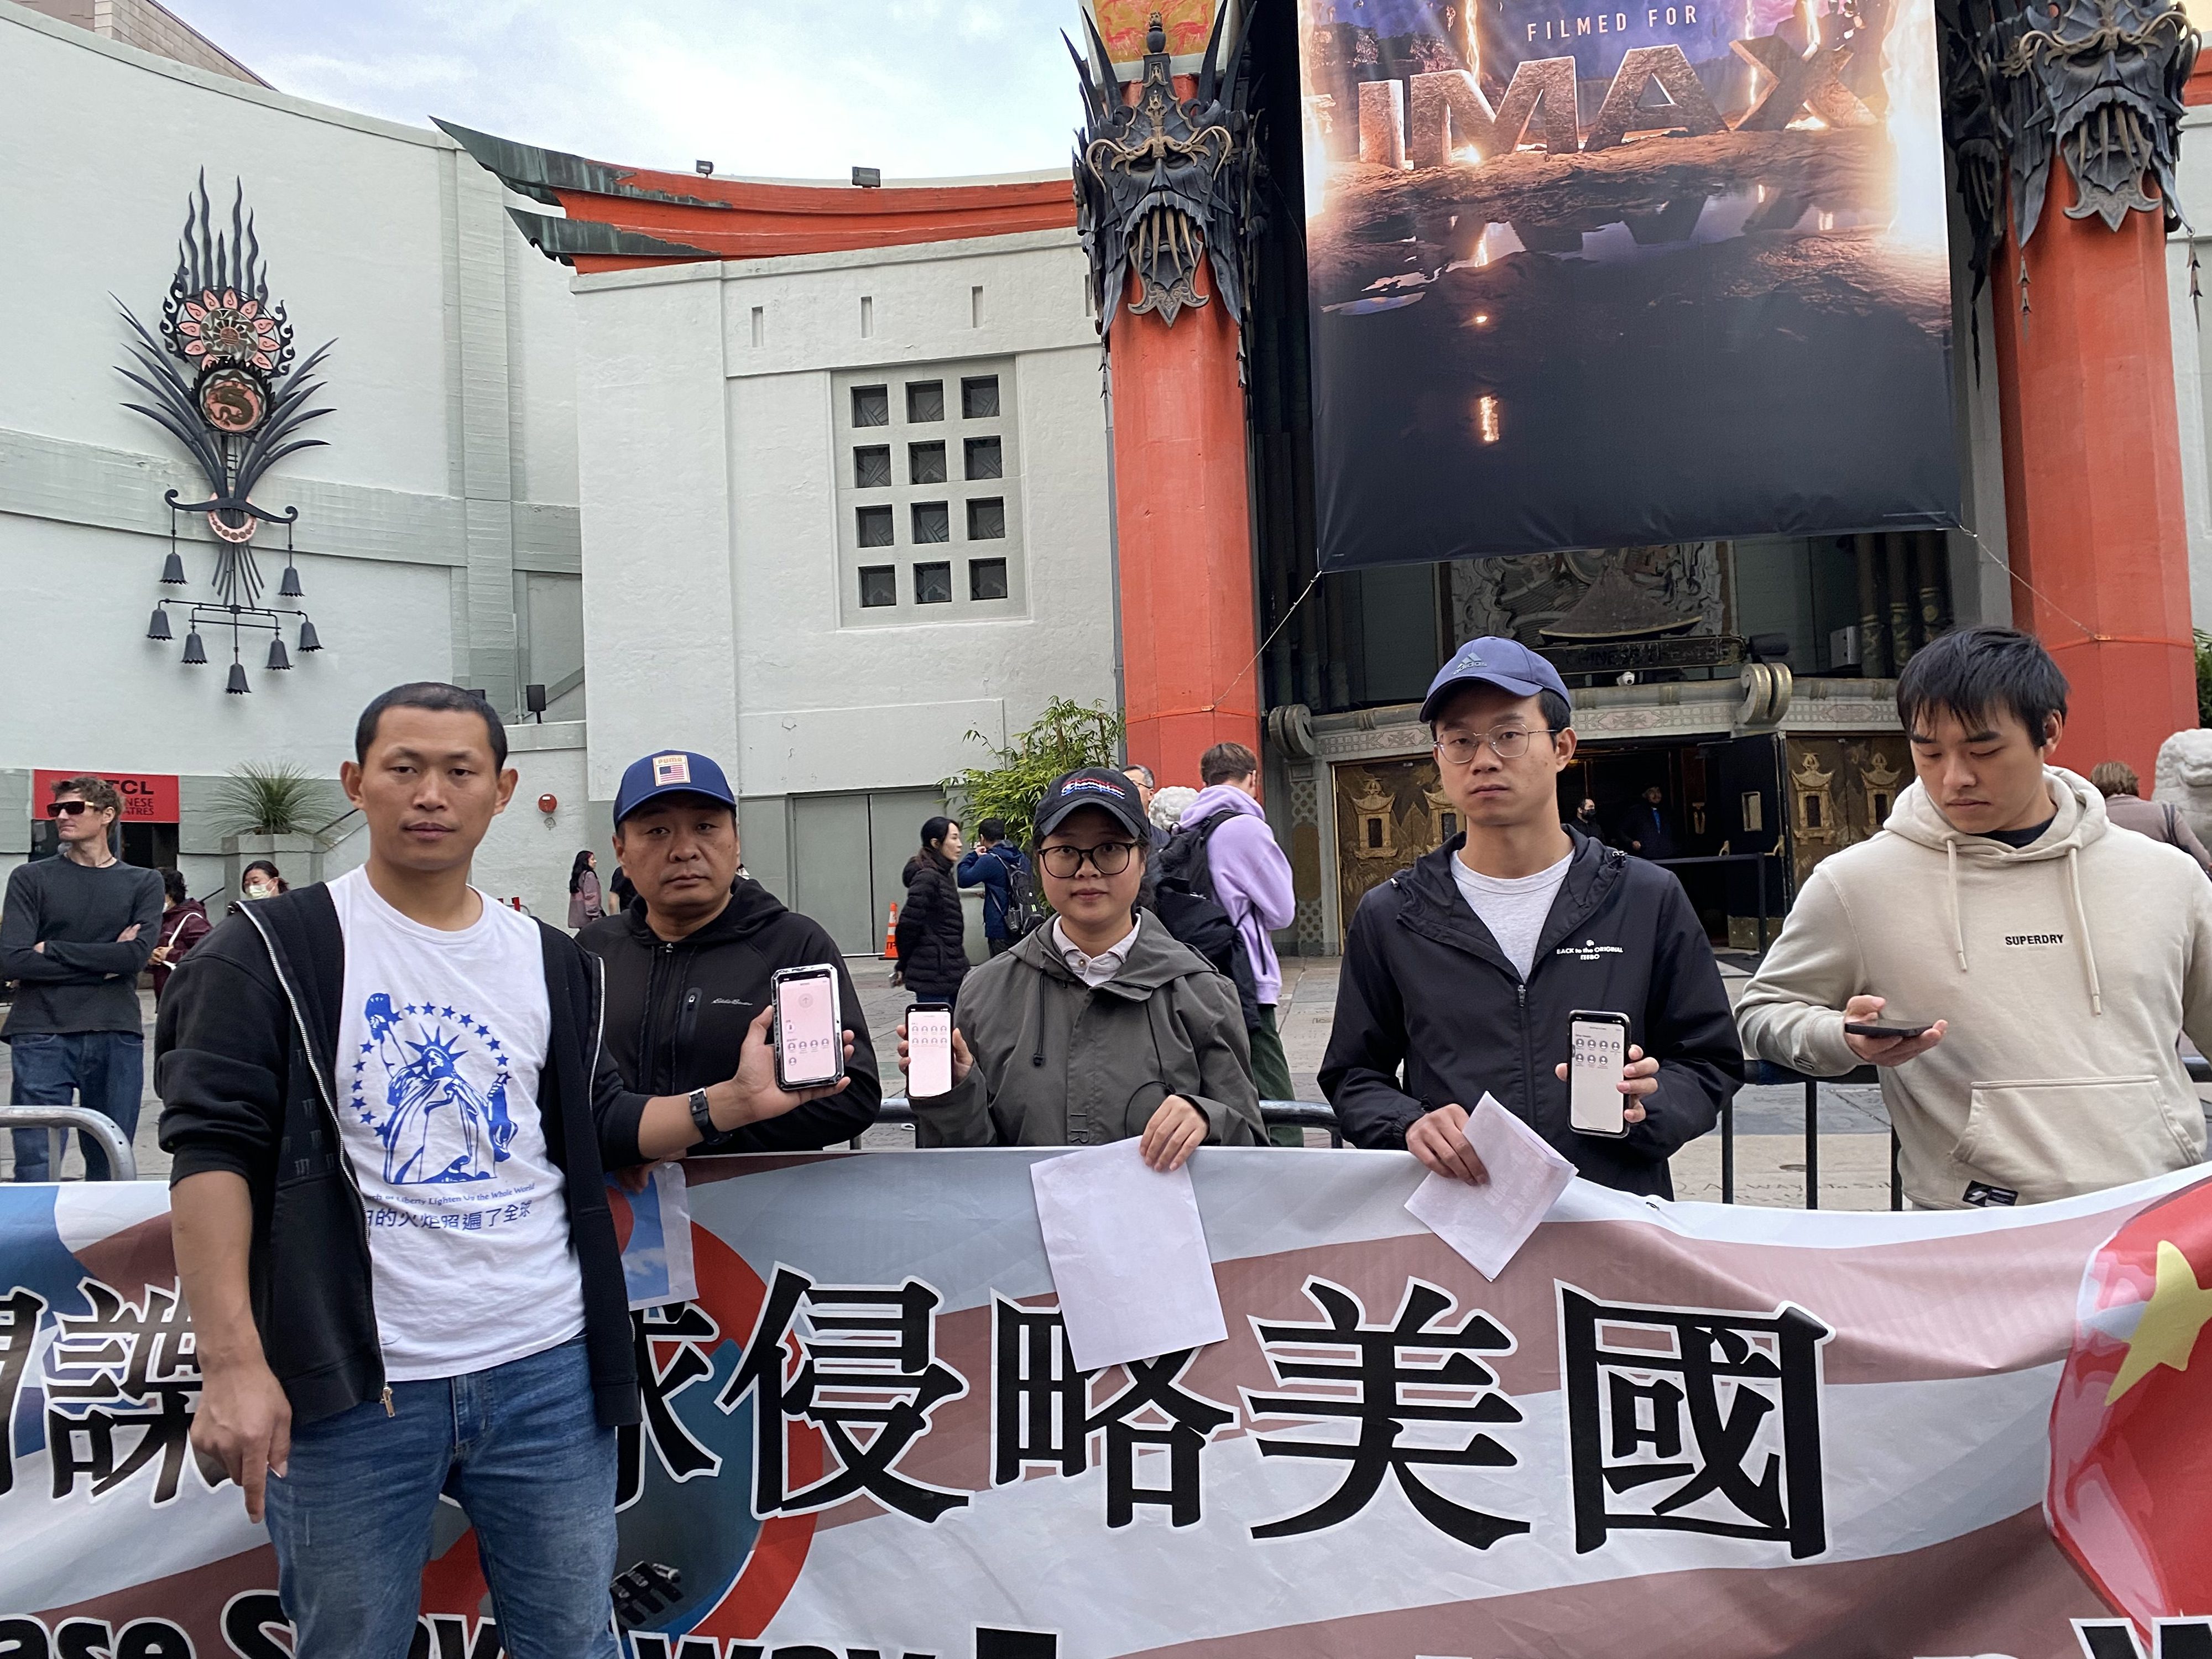 华人好莱坞集会 抗议中共间谍气球入侵美国